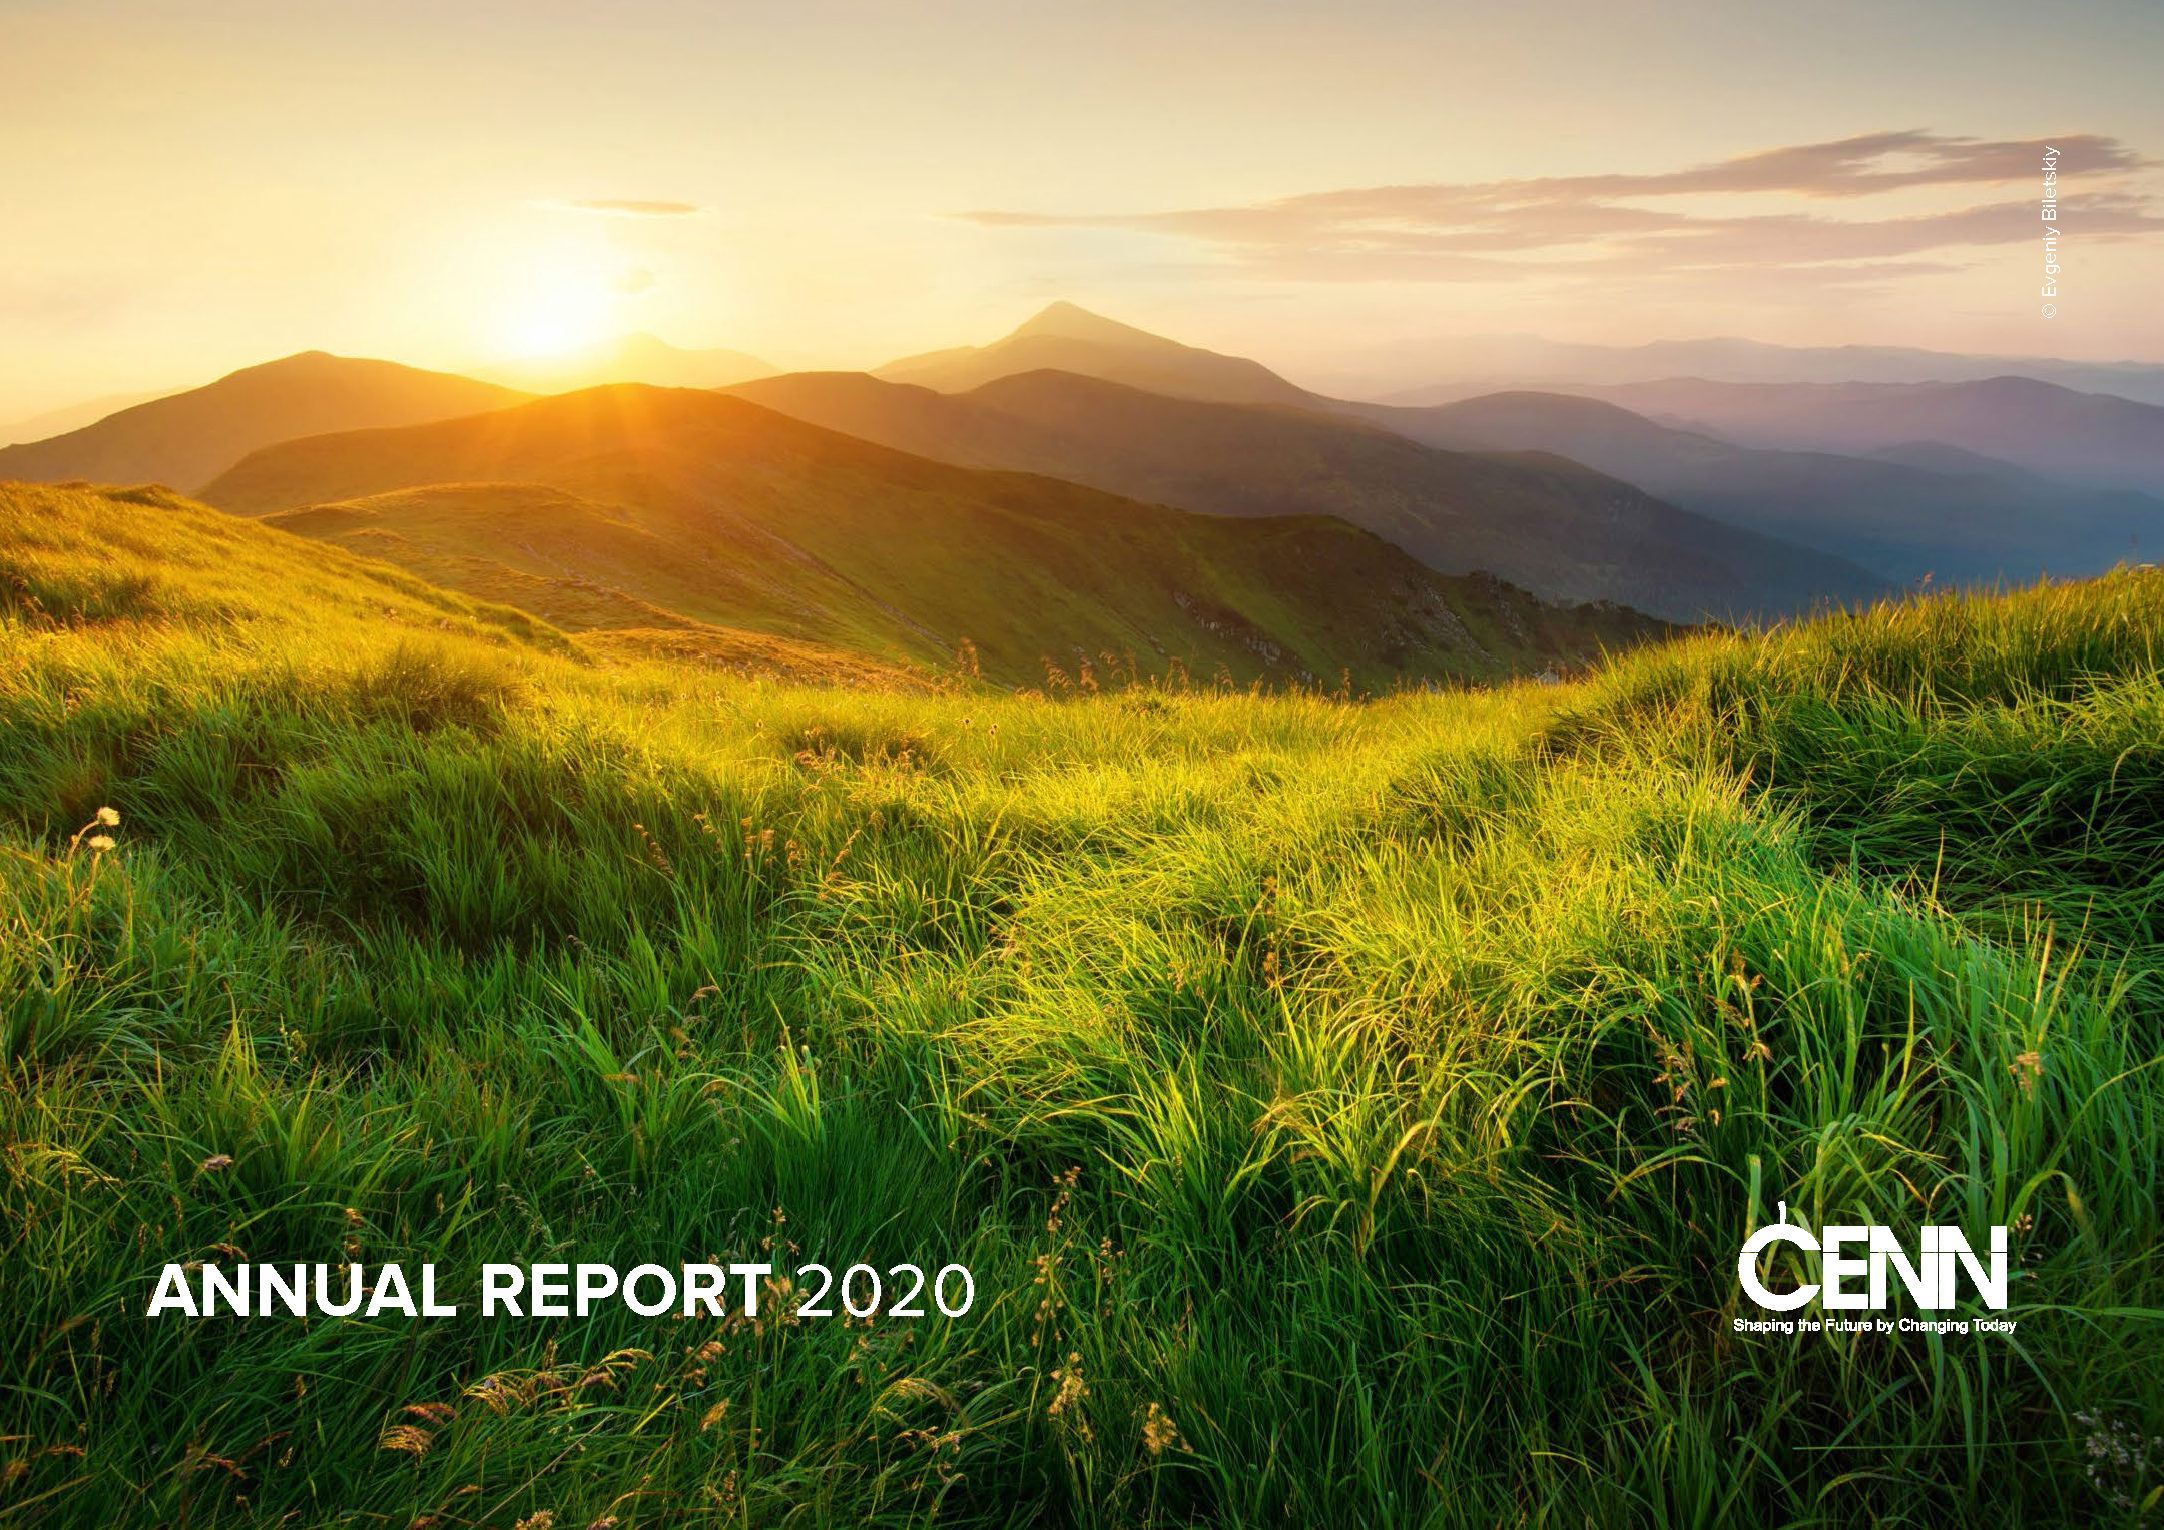 CENN Annual Report 2020